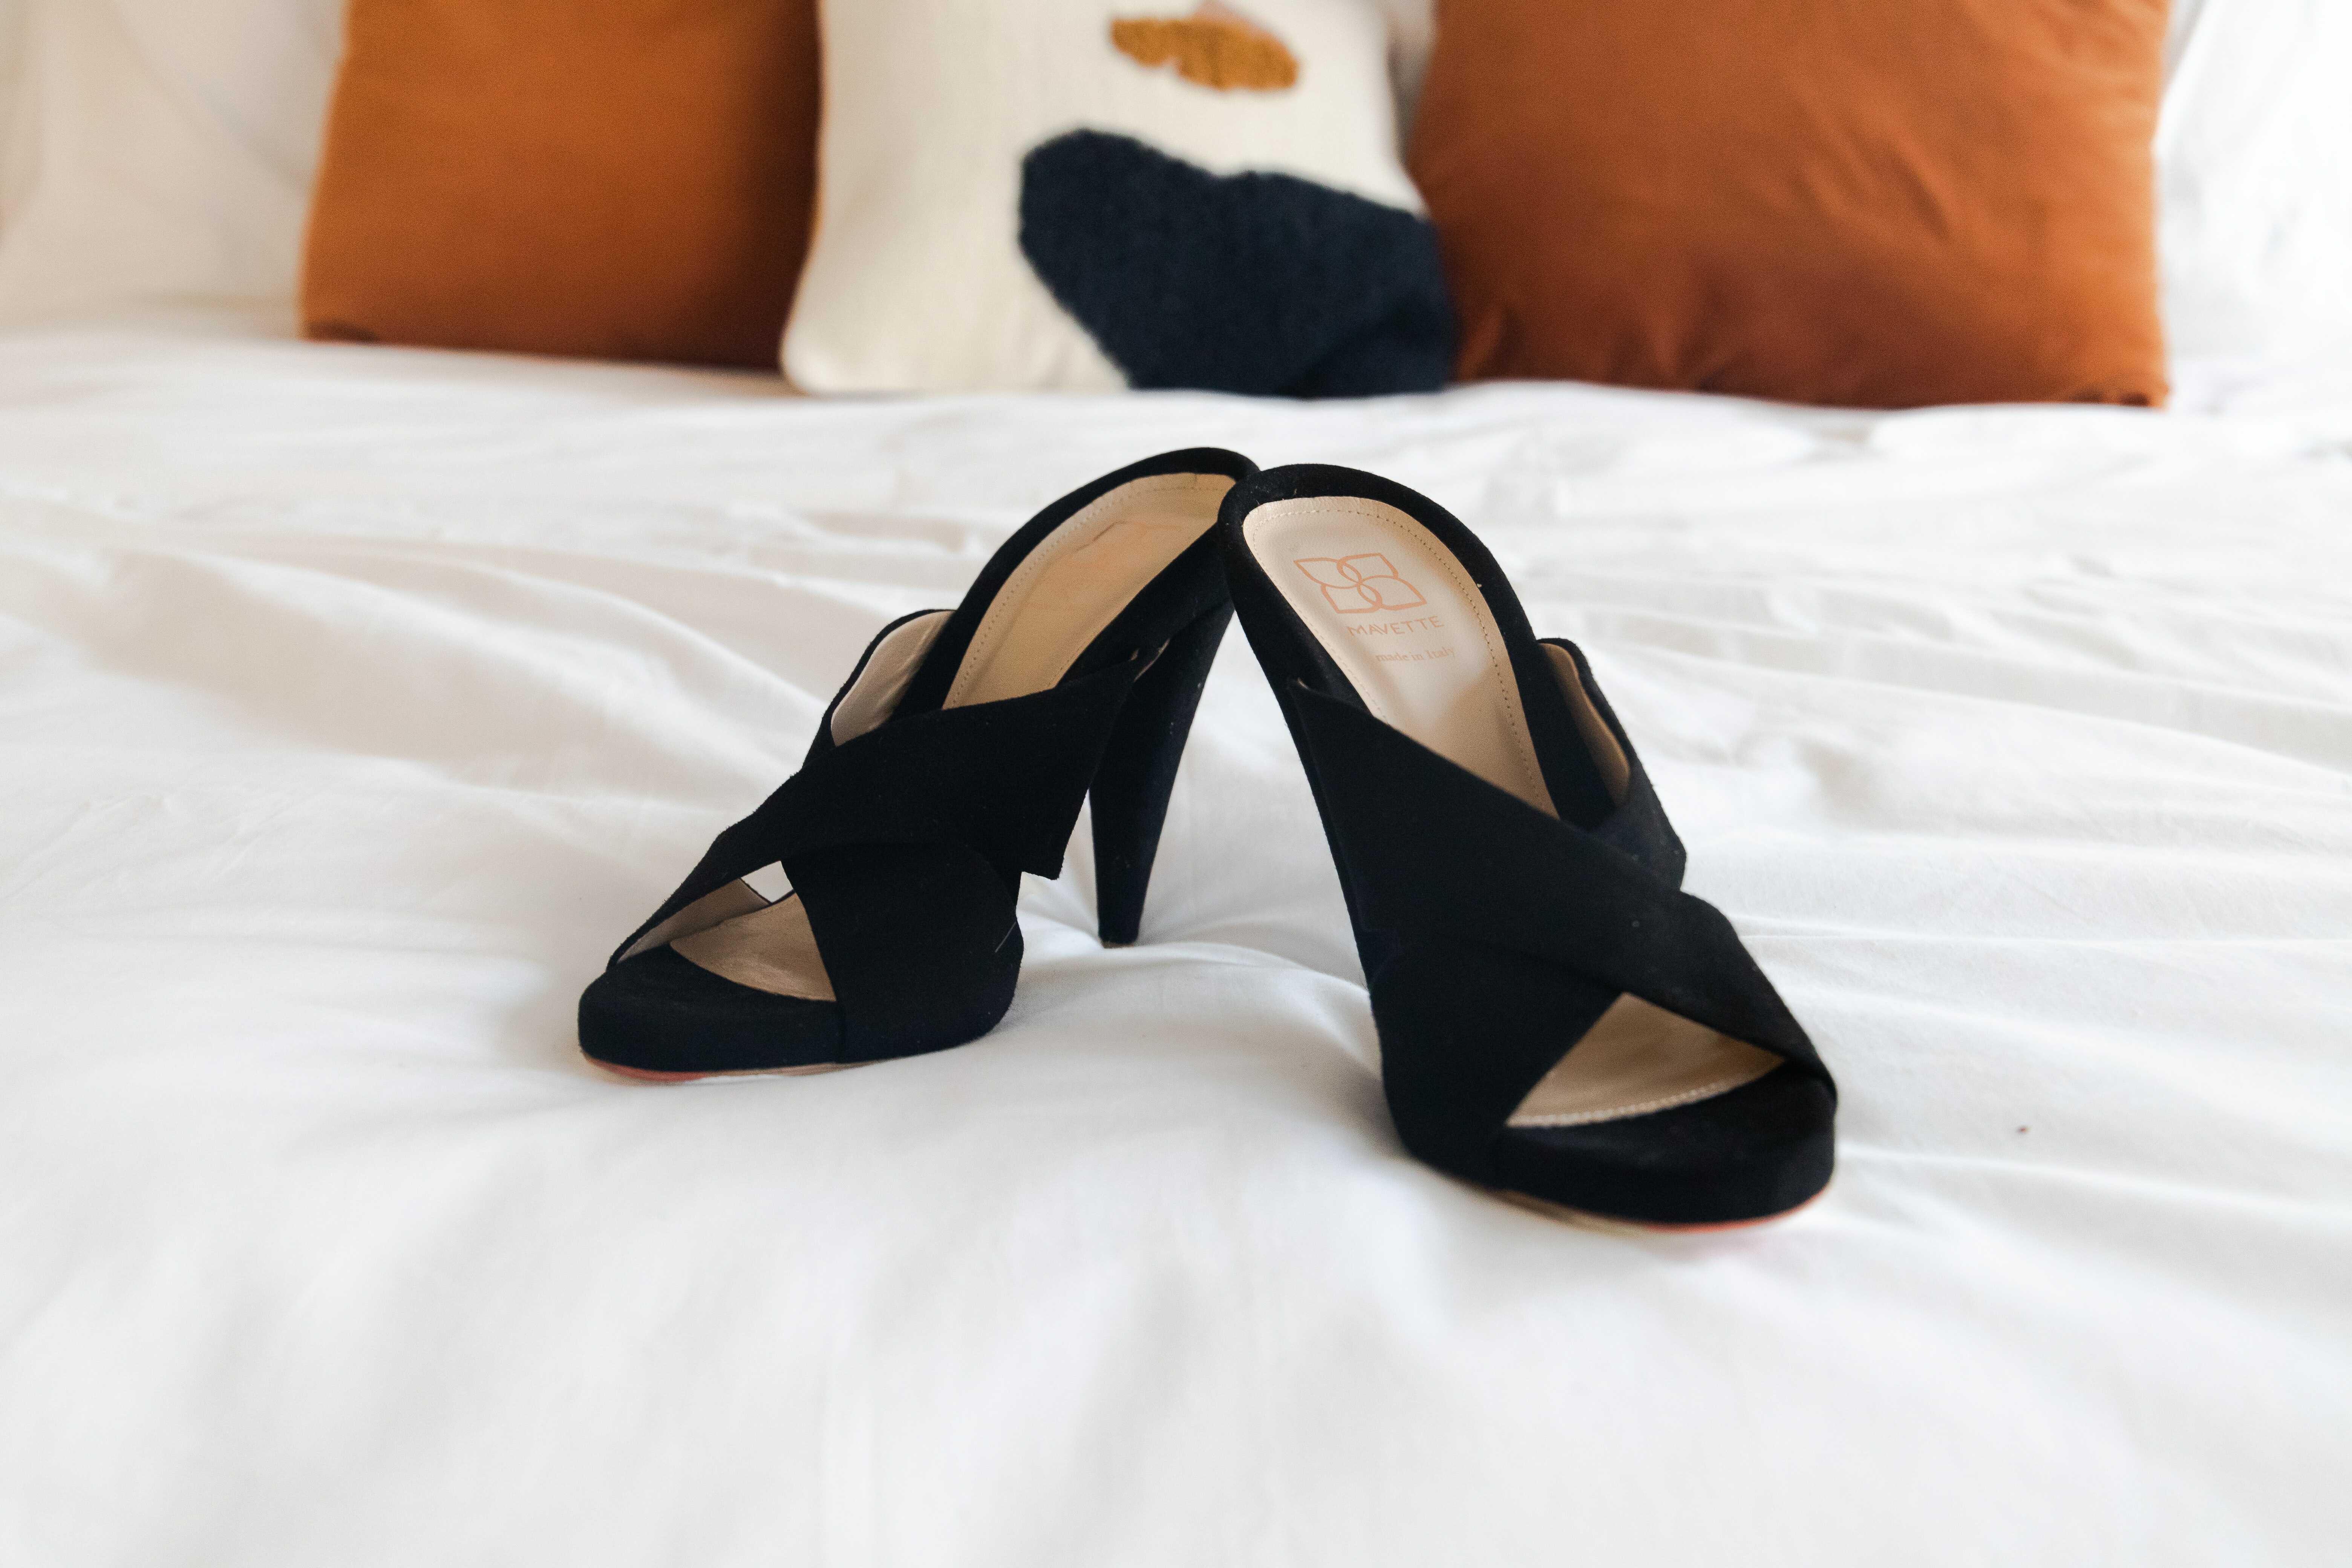 a black heels with cone heel